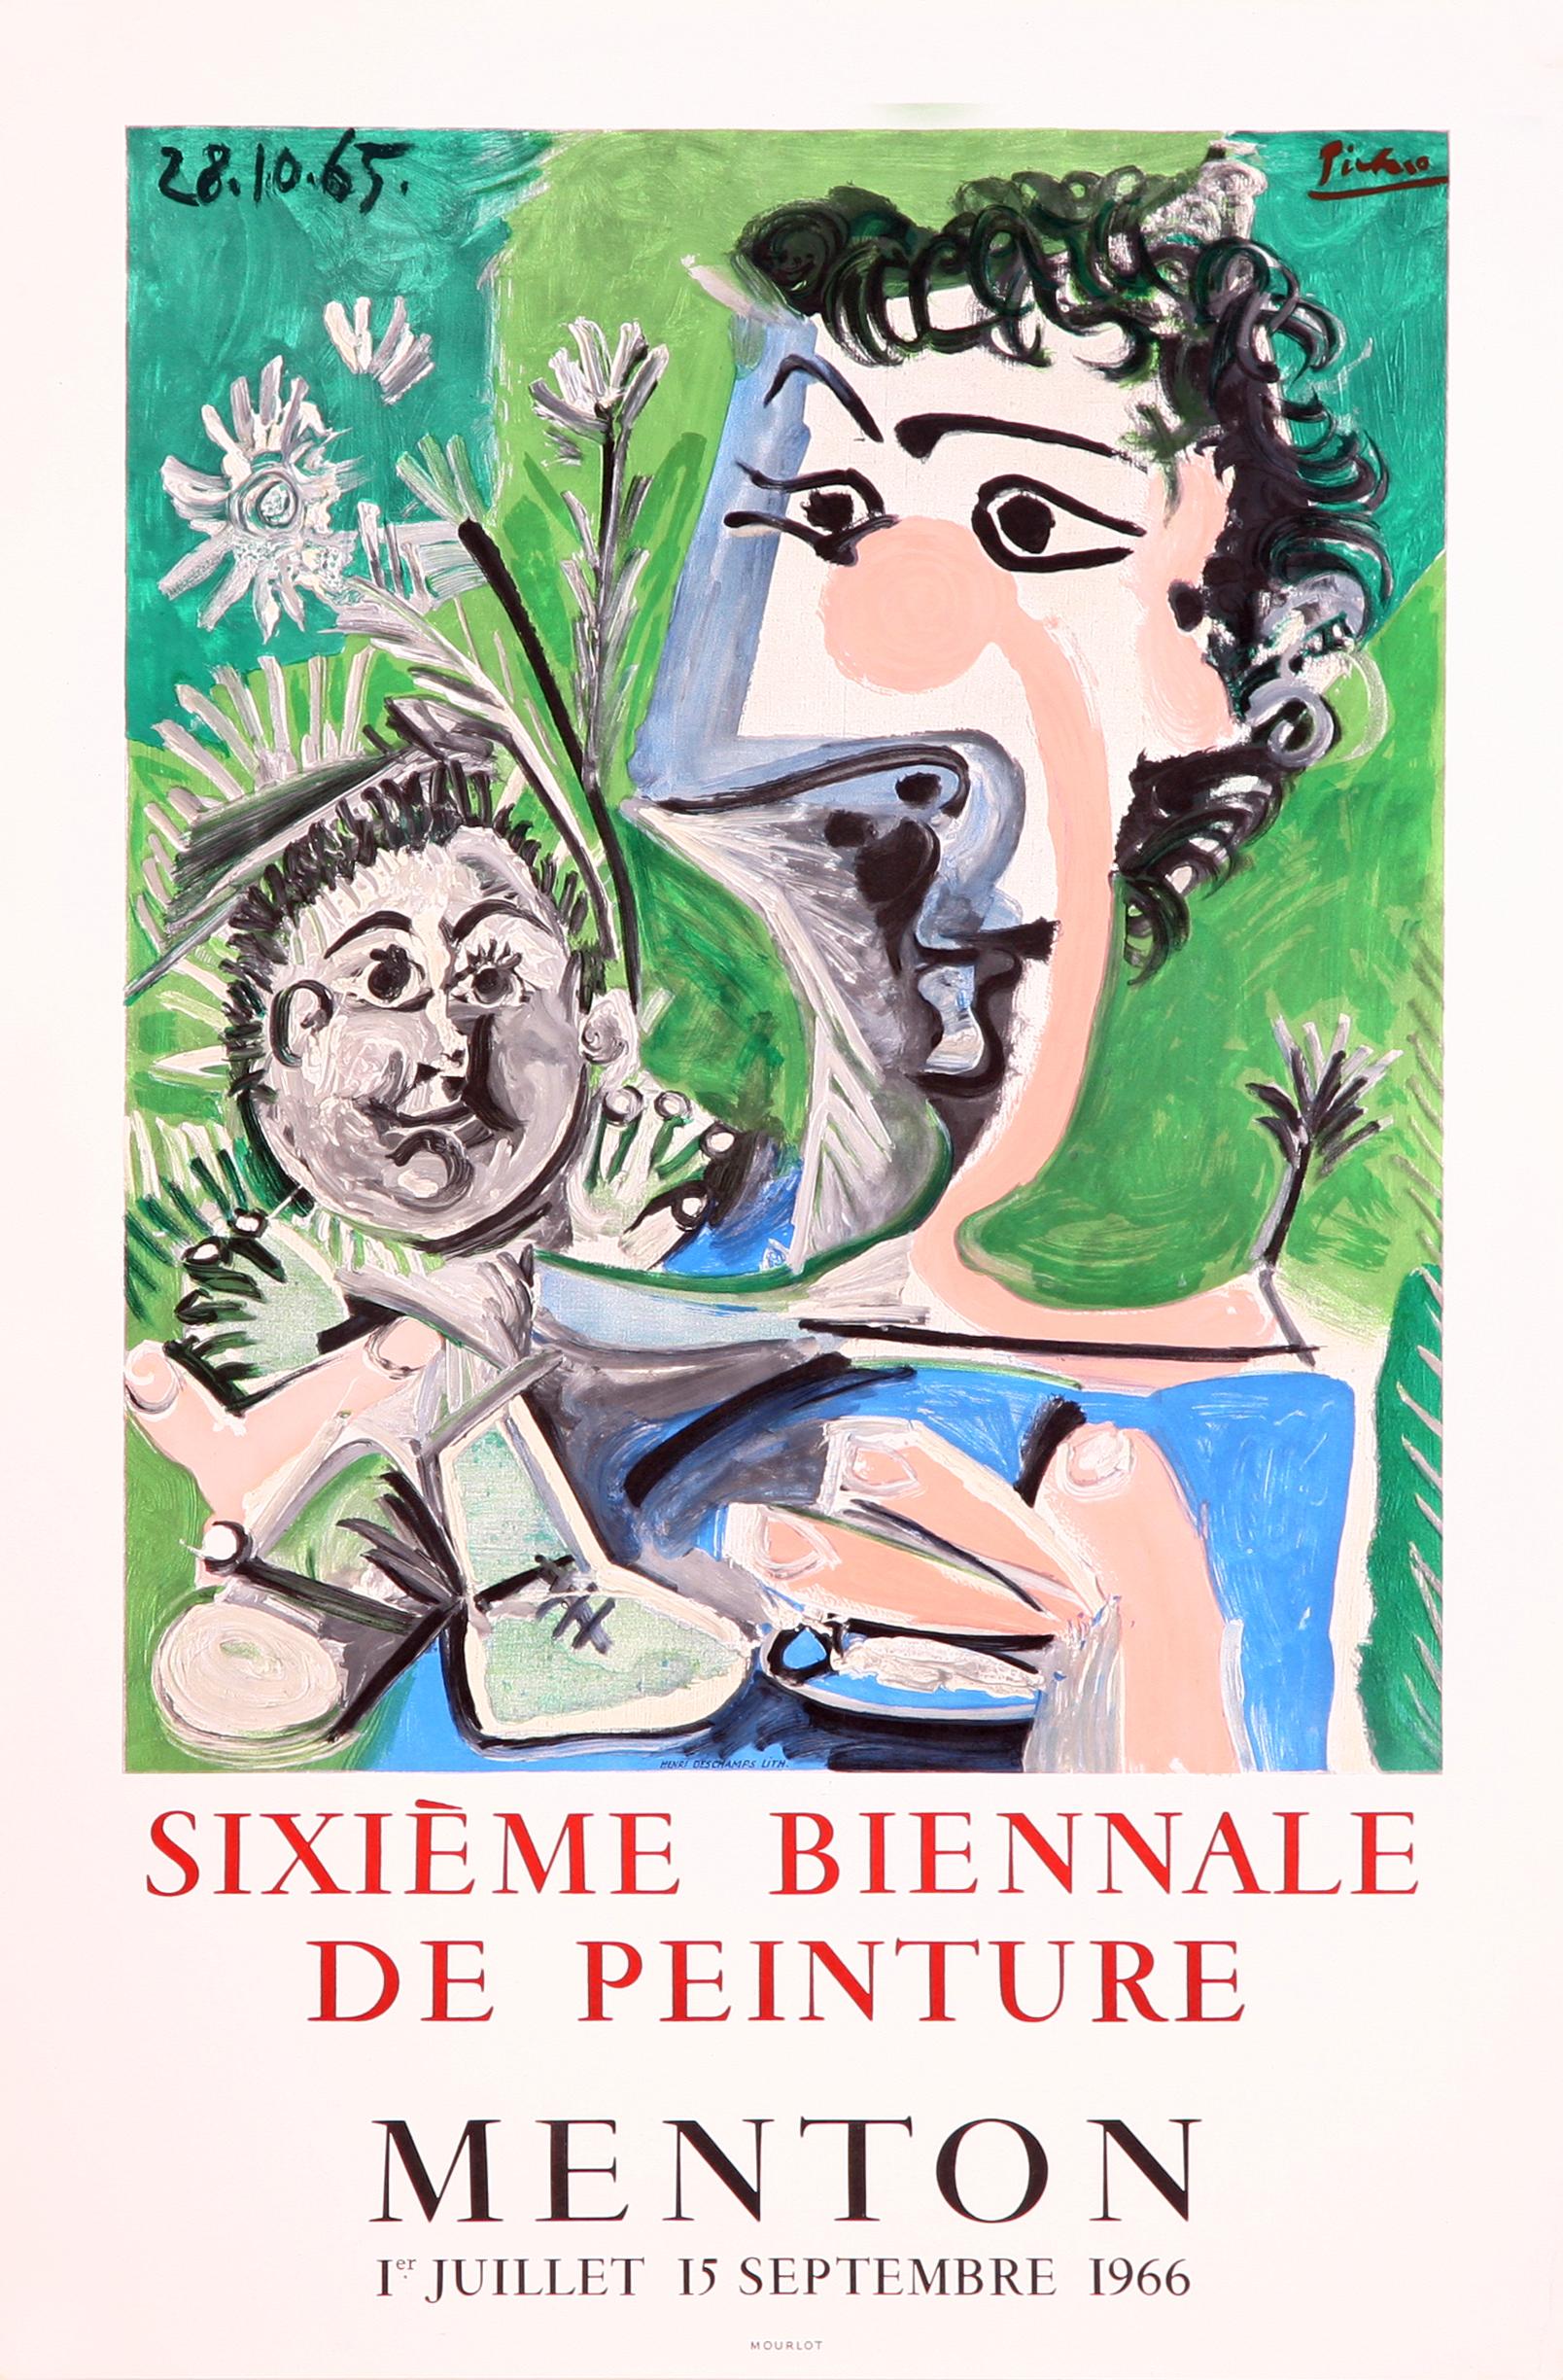 Affiche lithographique de la Sixieme Biennale de Peinture - Menton (d'après) Pablo Picasso - Print de (after) Pablo Picasso